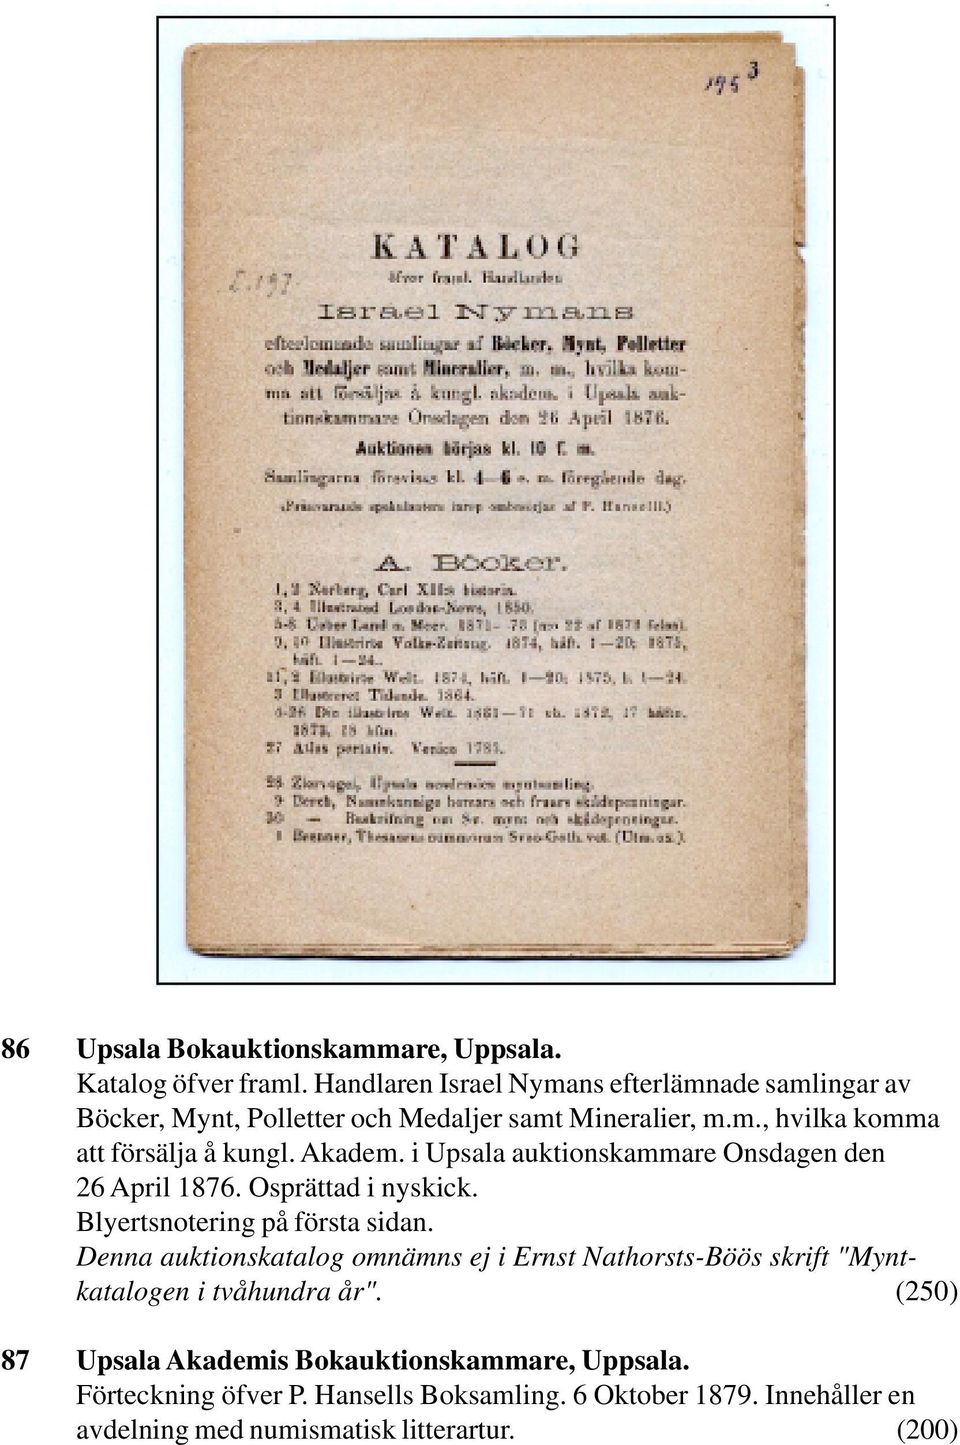 Akadem. i Upsala auktionskammare Onsdagen den 26 April 1876. Osprättad i nyskick. Blyertsnotering på första sidan.